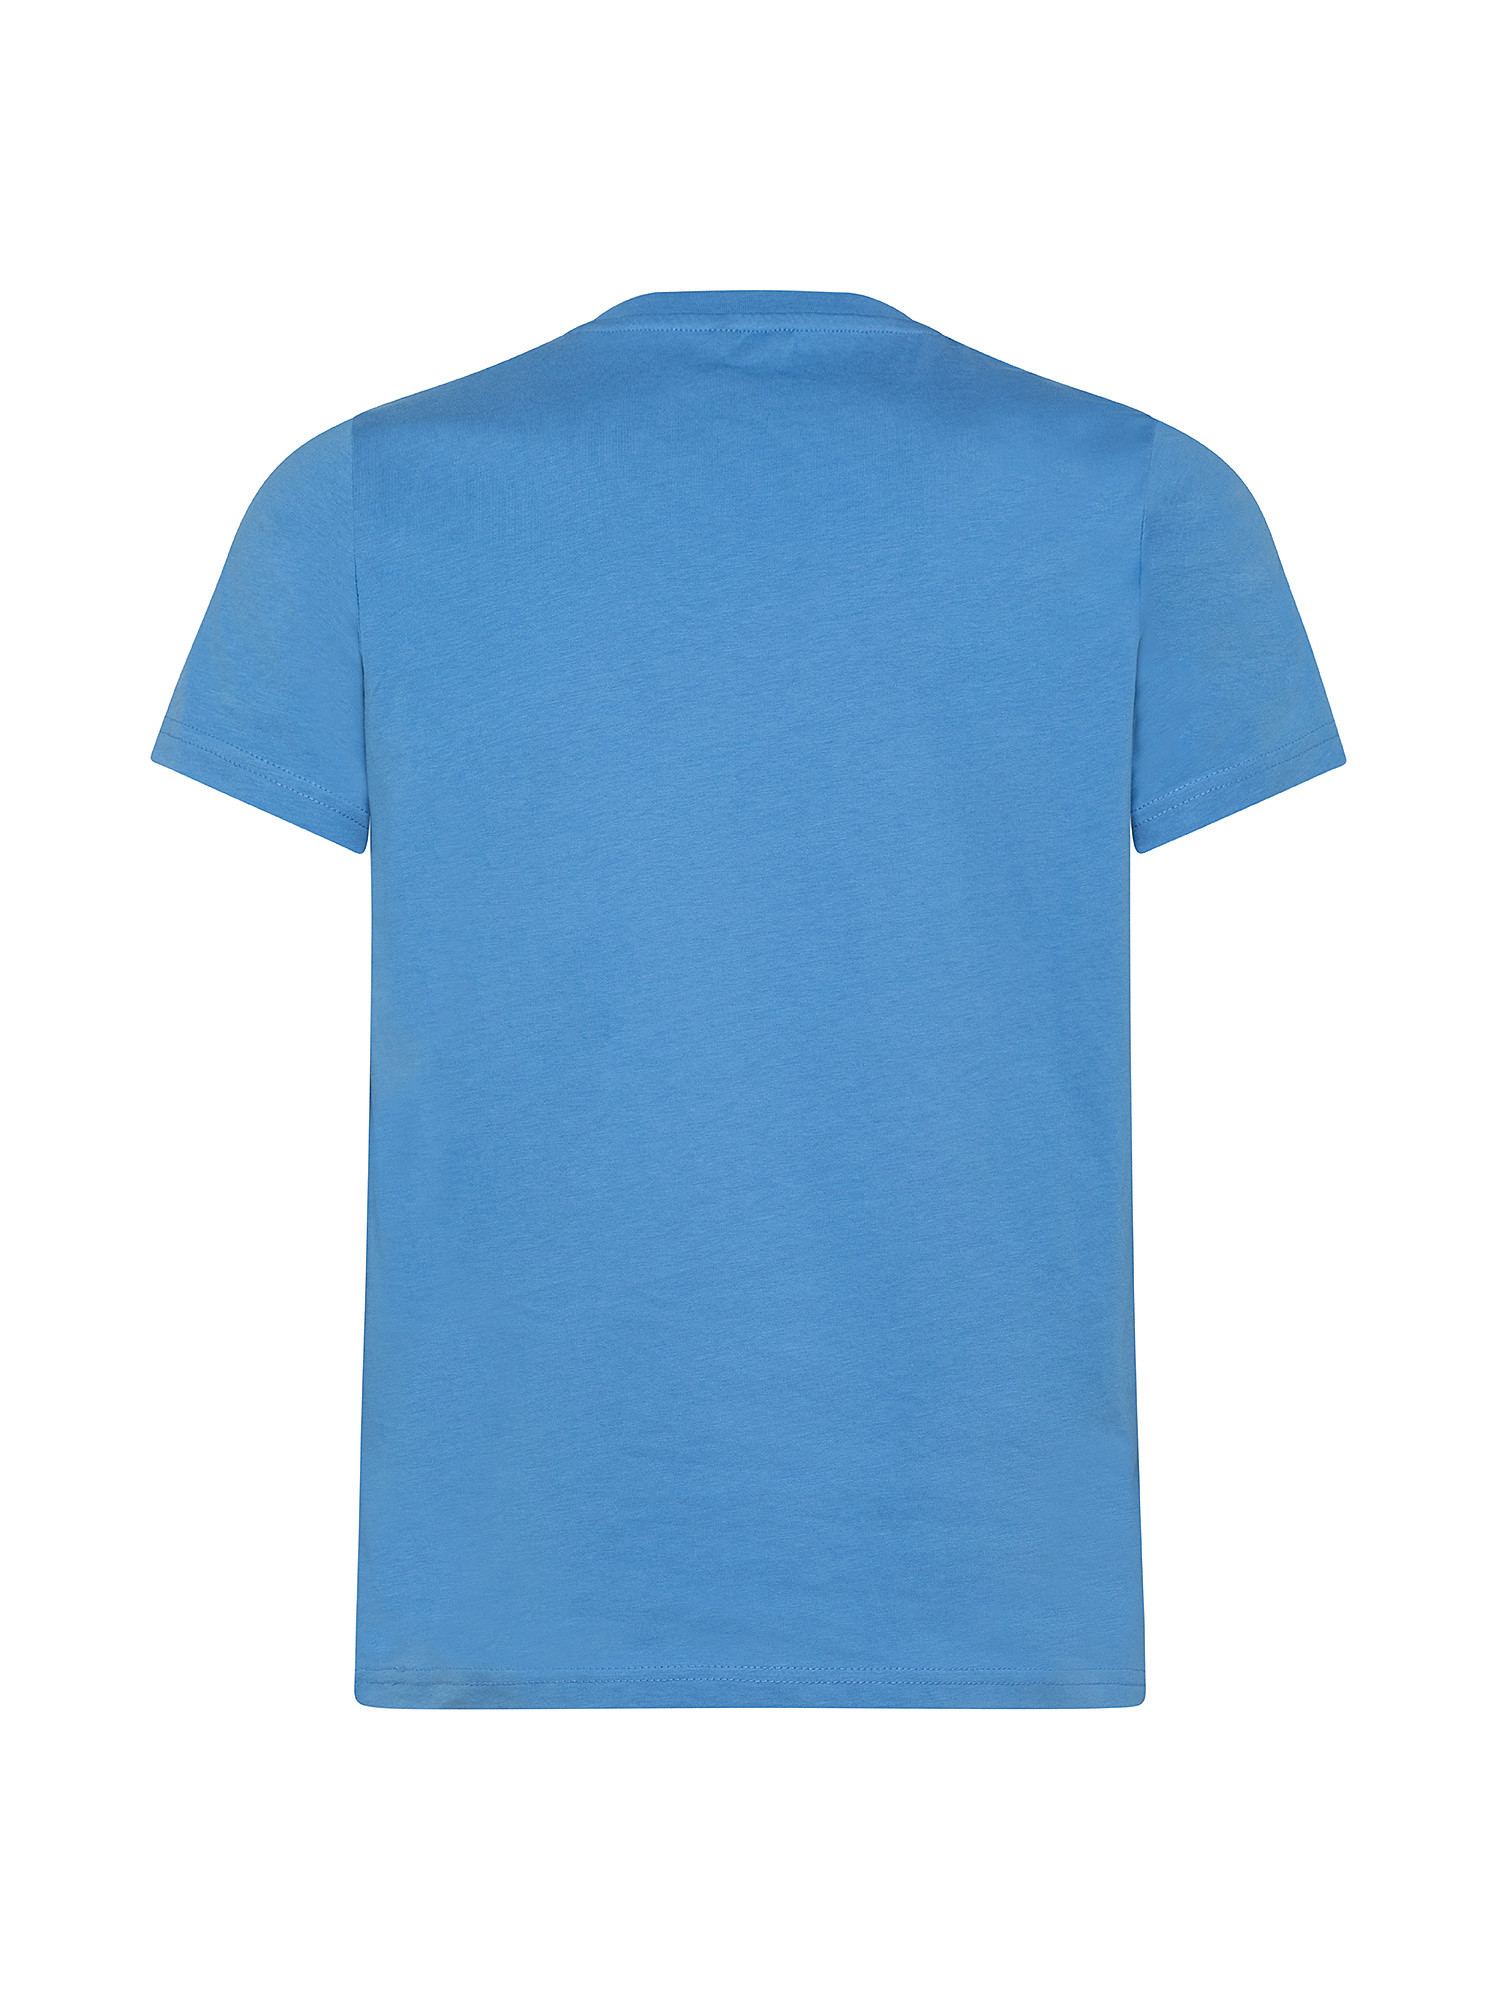 Slim fit T-shirt, Light Blue, large image number 1